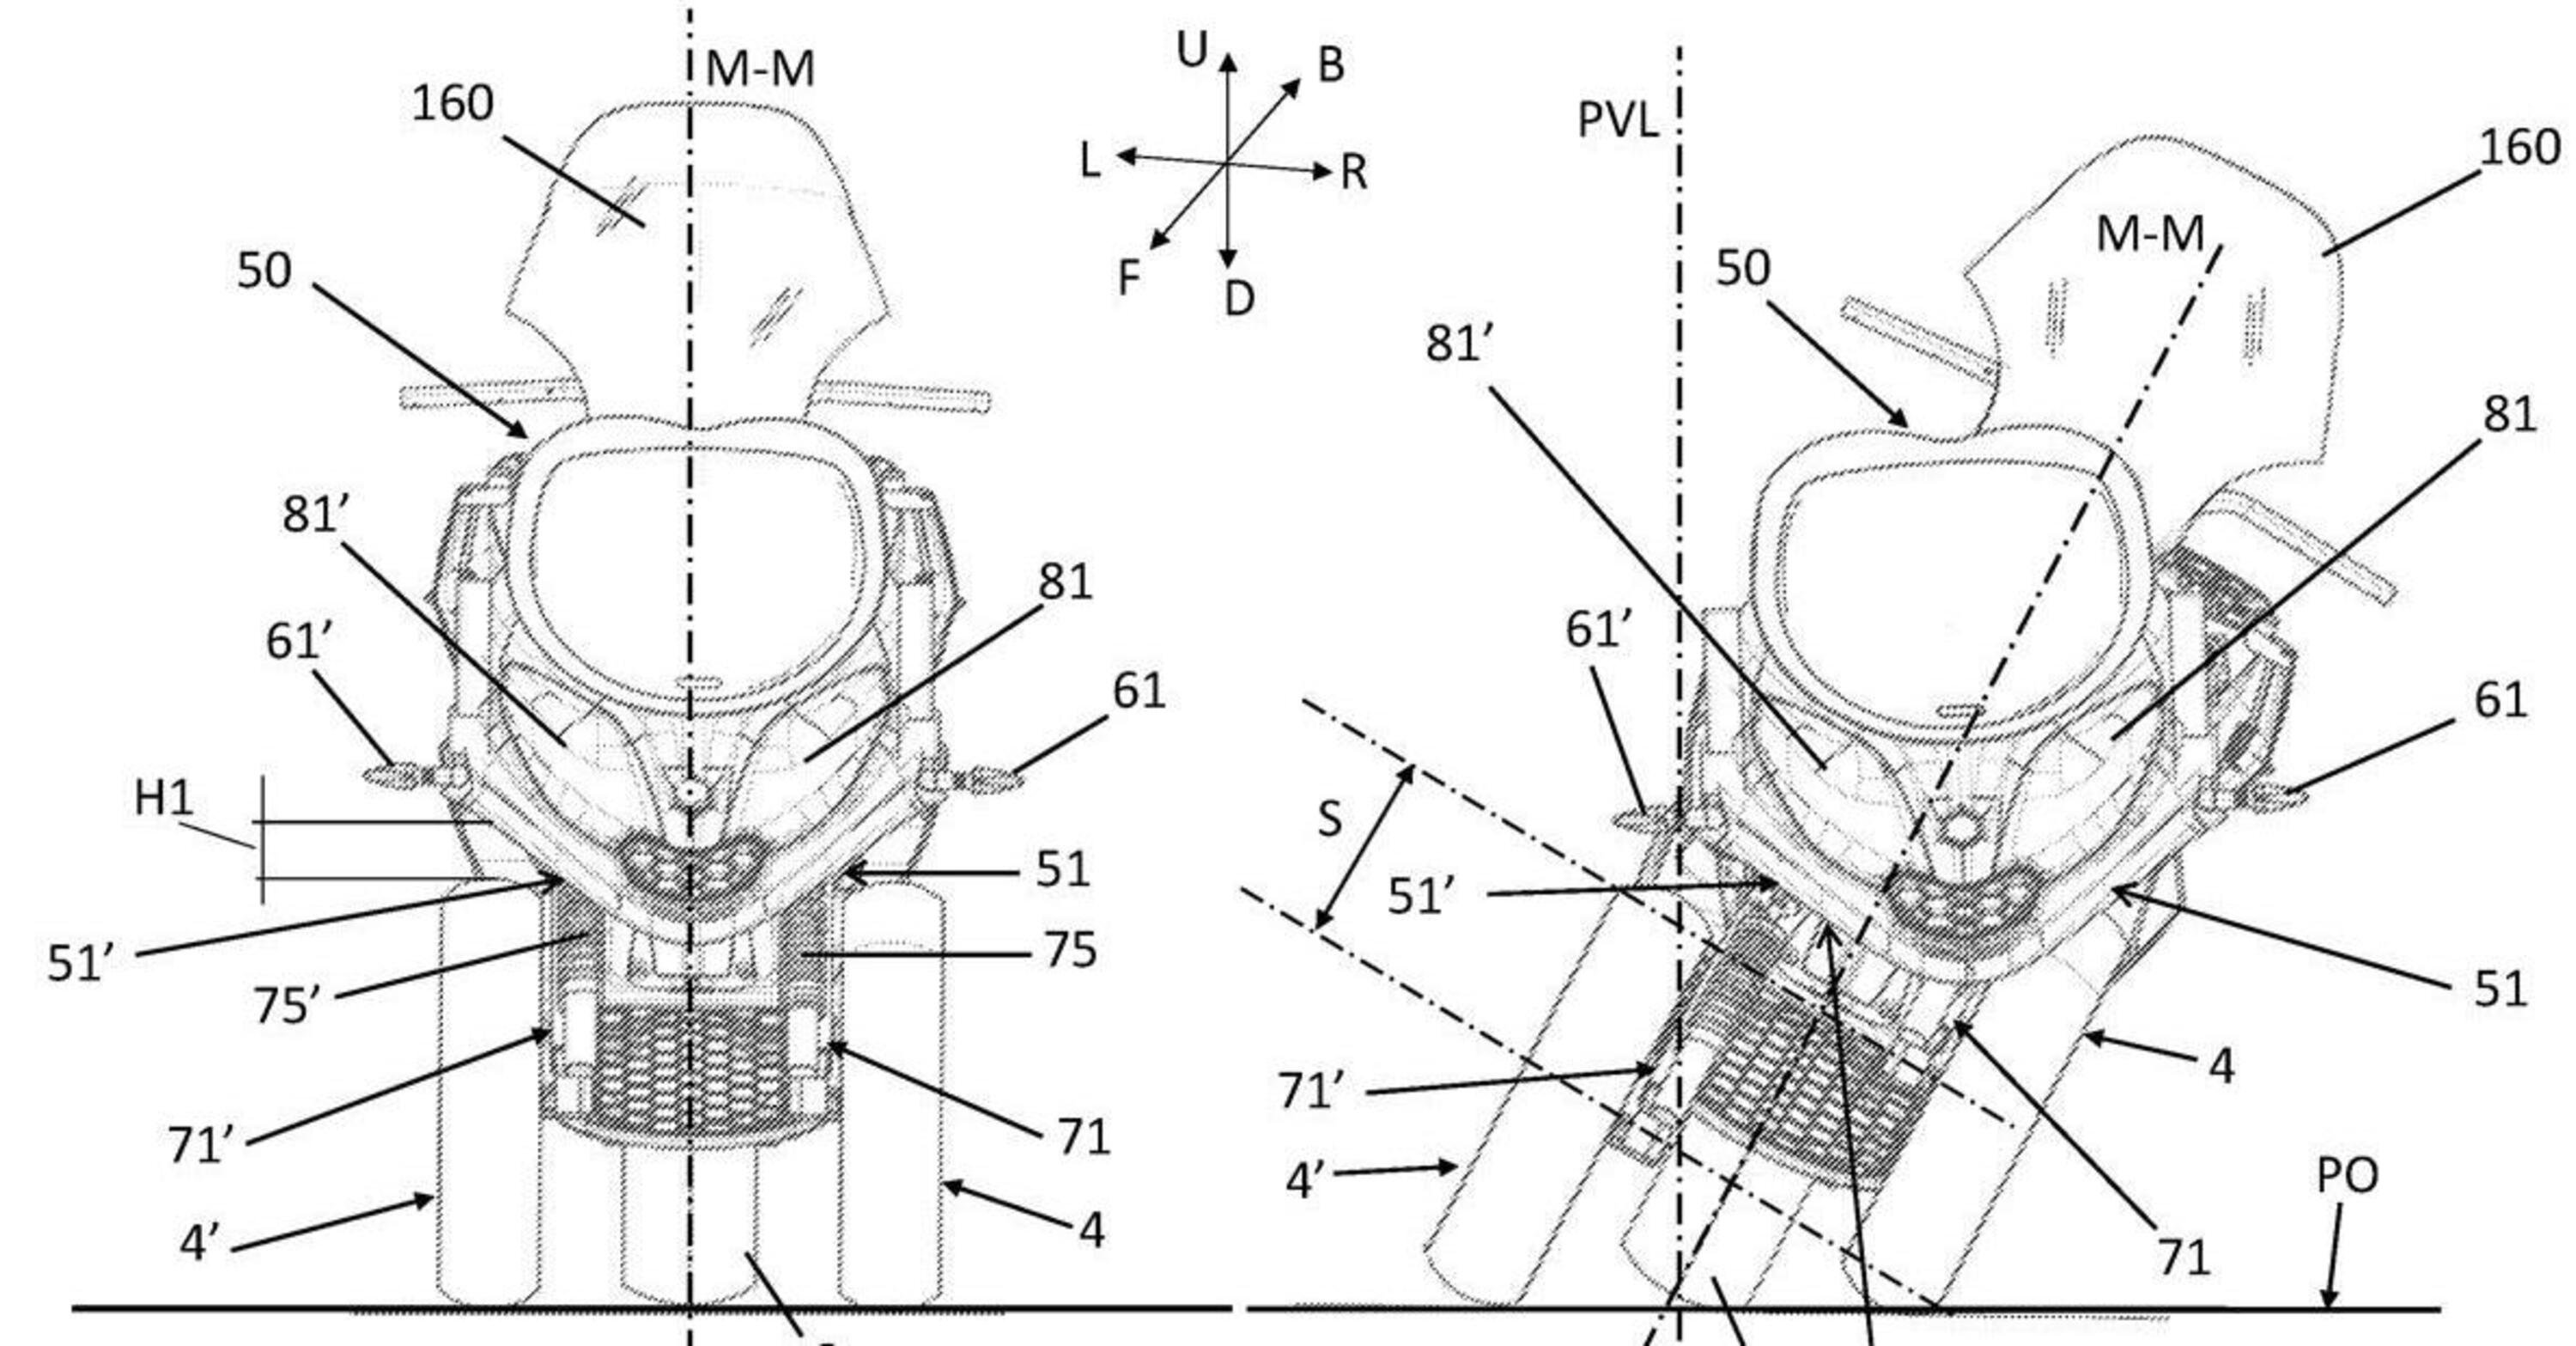 Perch&eacute; Piaggio ha brevettato una nuova carenatura per i suoi tre (e quattro) ruote?